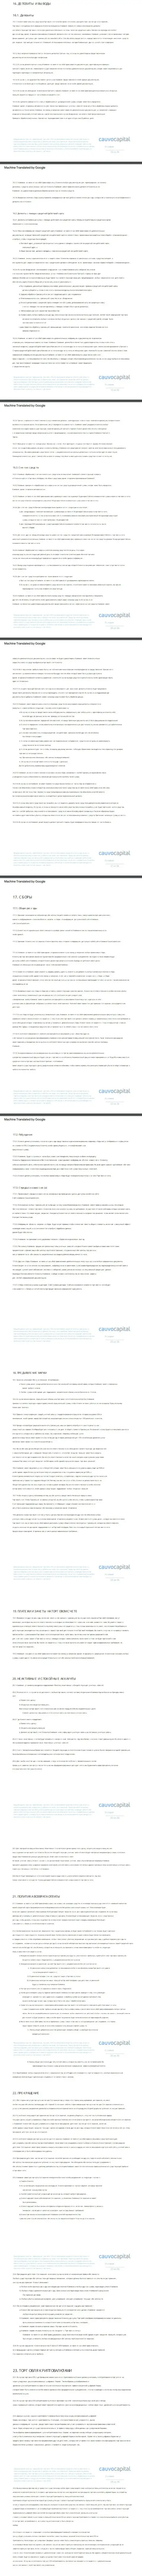 3 часть клиентского соглашения форекс-дилинговой компании CauvoCapital